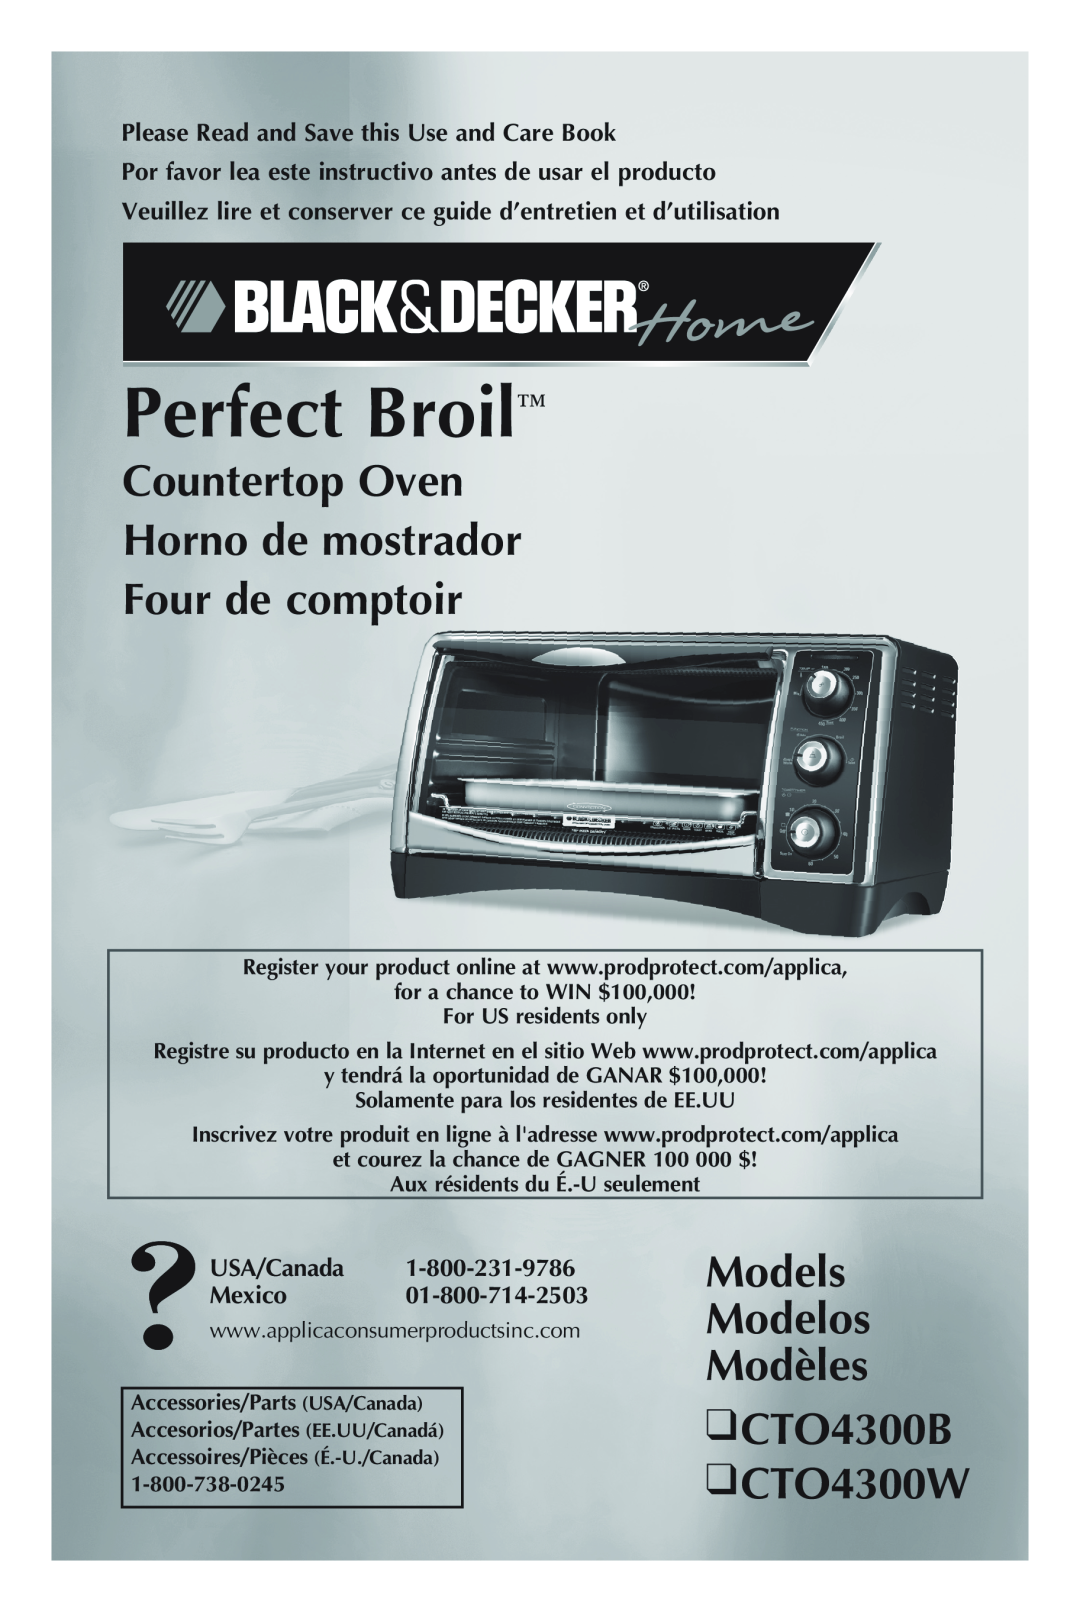 Black & Decker CTO4300W manual Countertop Oven Horno de mostrador, Four de comptoir, Perfect Broil, USA/Canada Mexico 